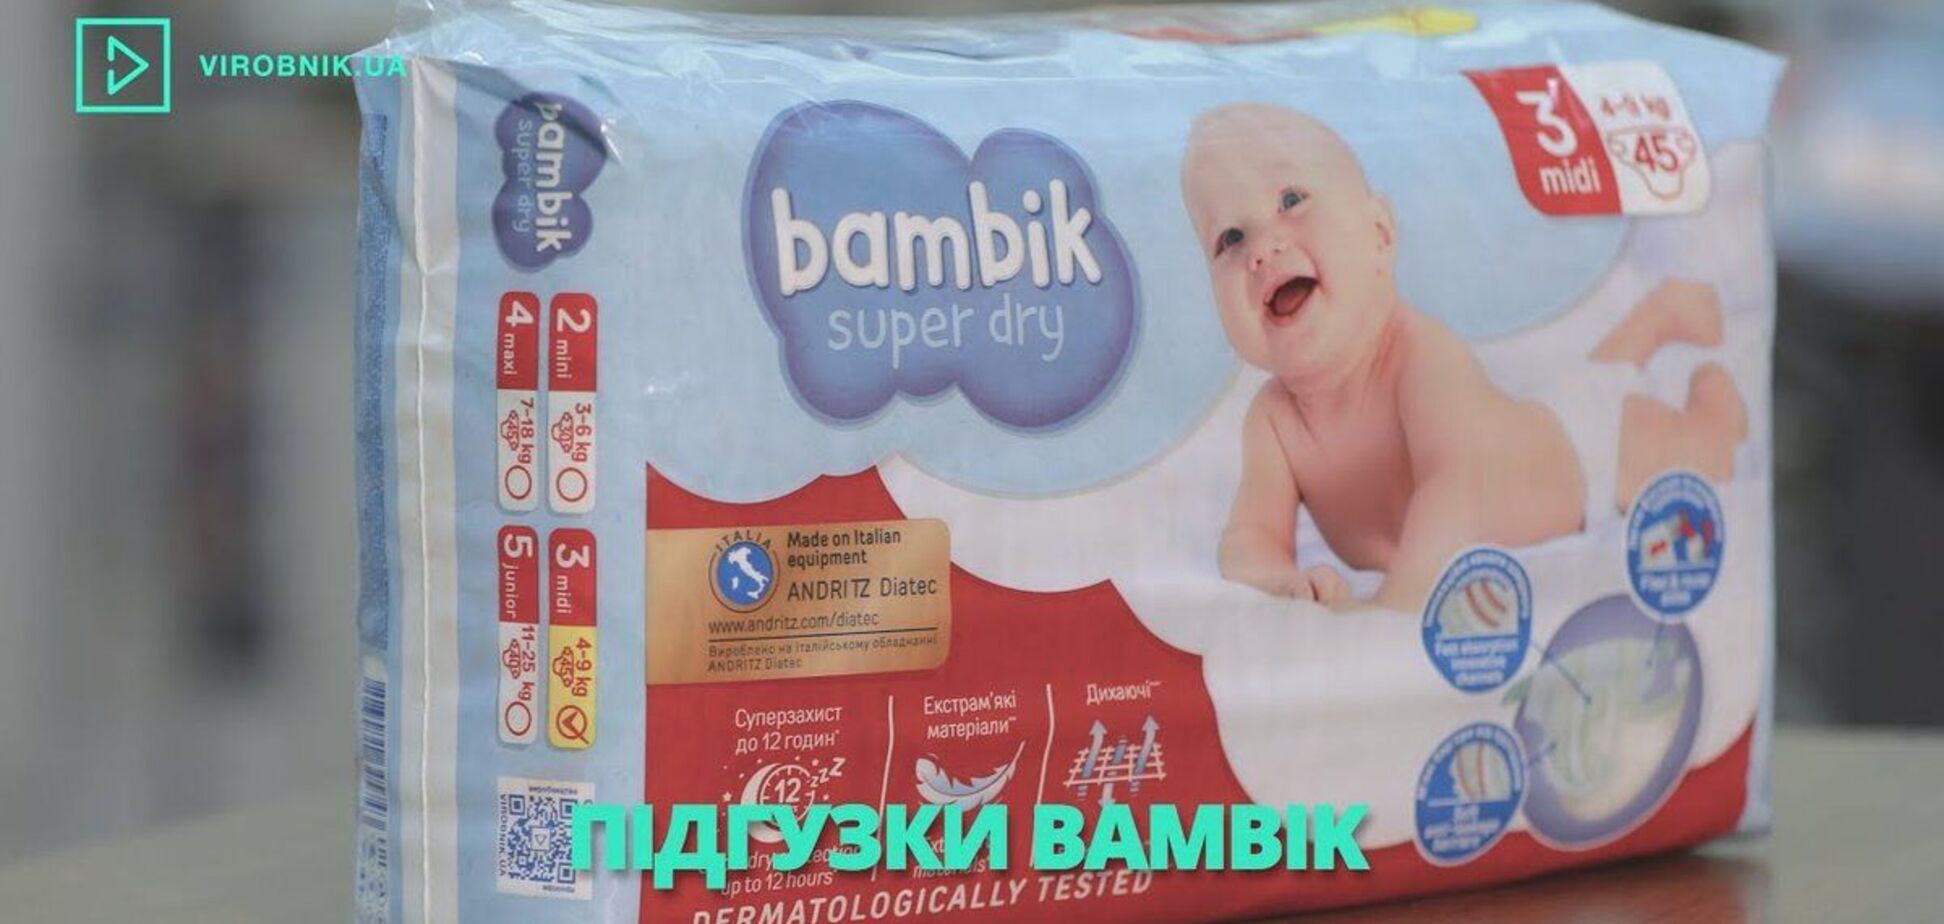 До проєкту Virobnik.ua приєдналася корпорація 'Біосфера' з брендом підгузок Bambik / Скриншот зі сайту